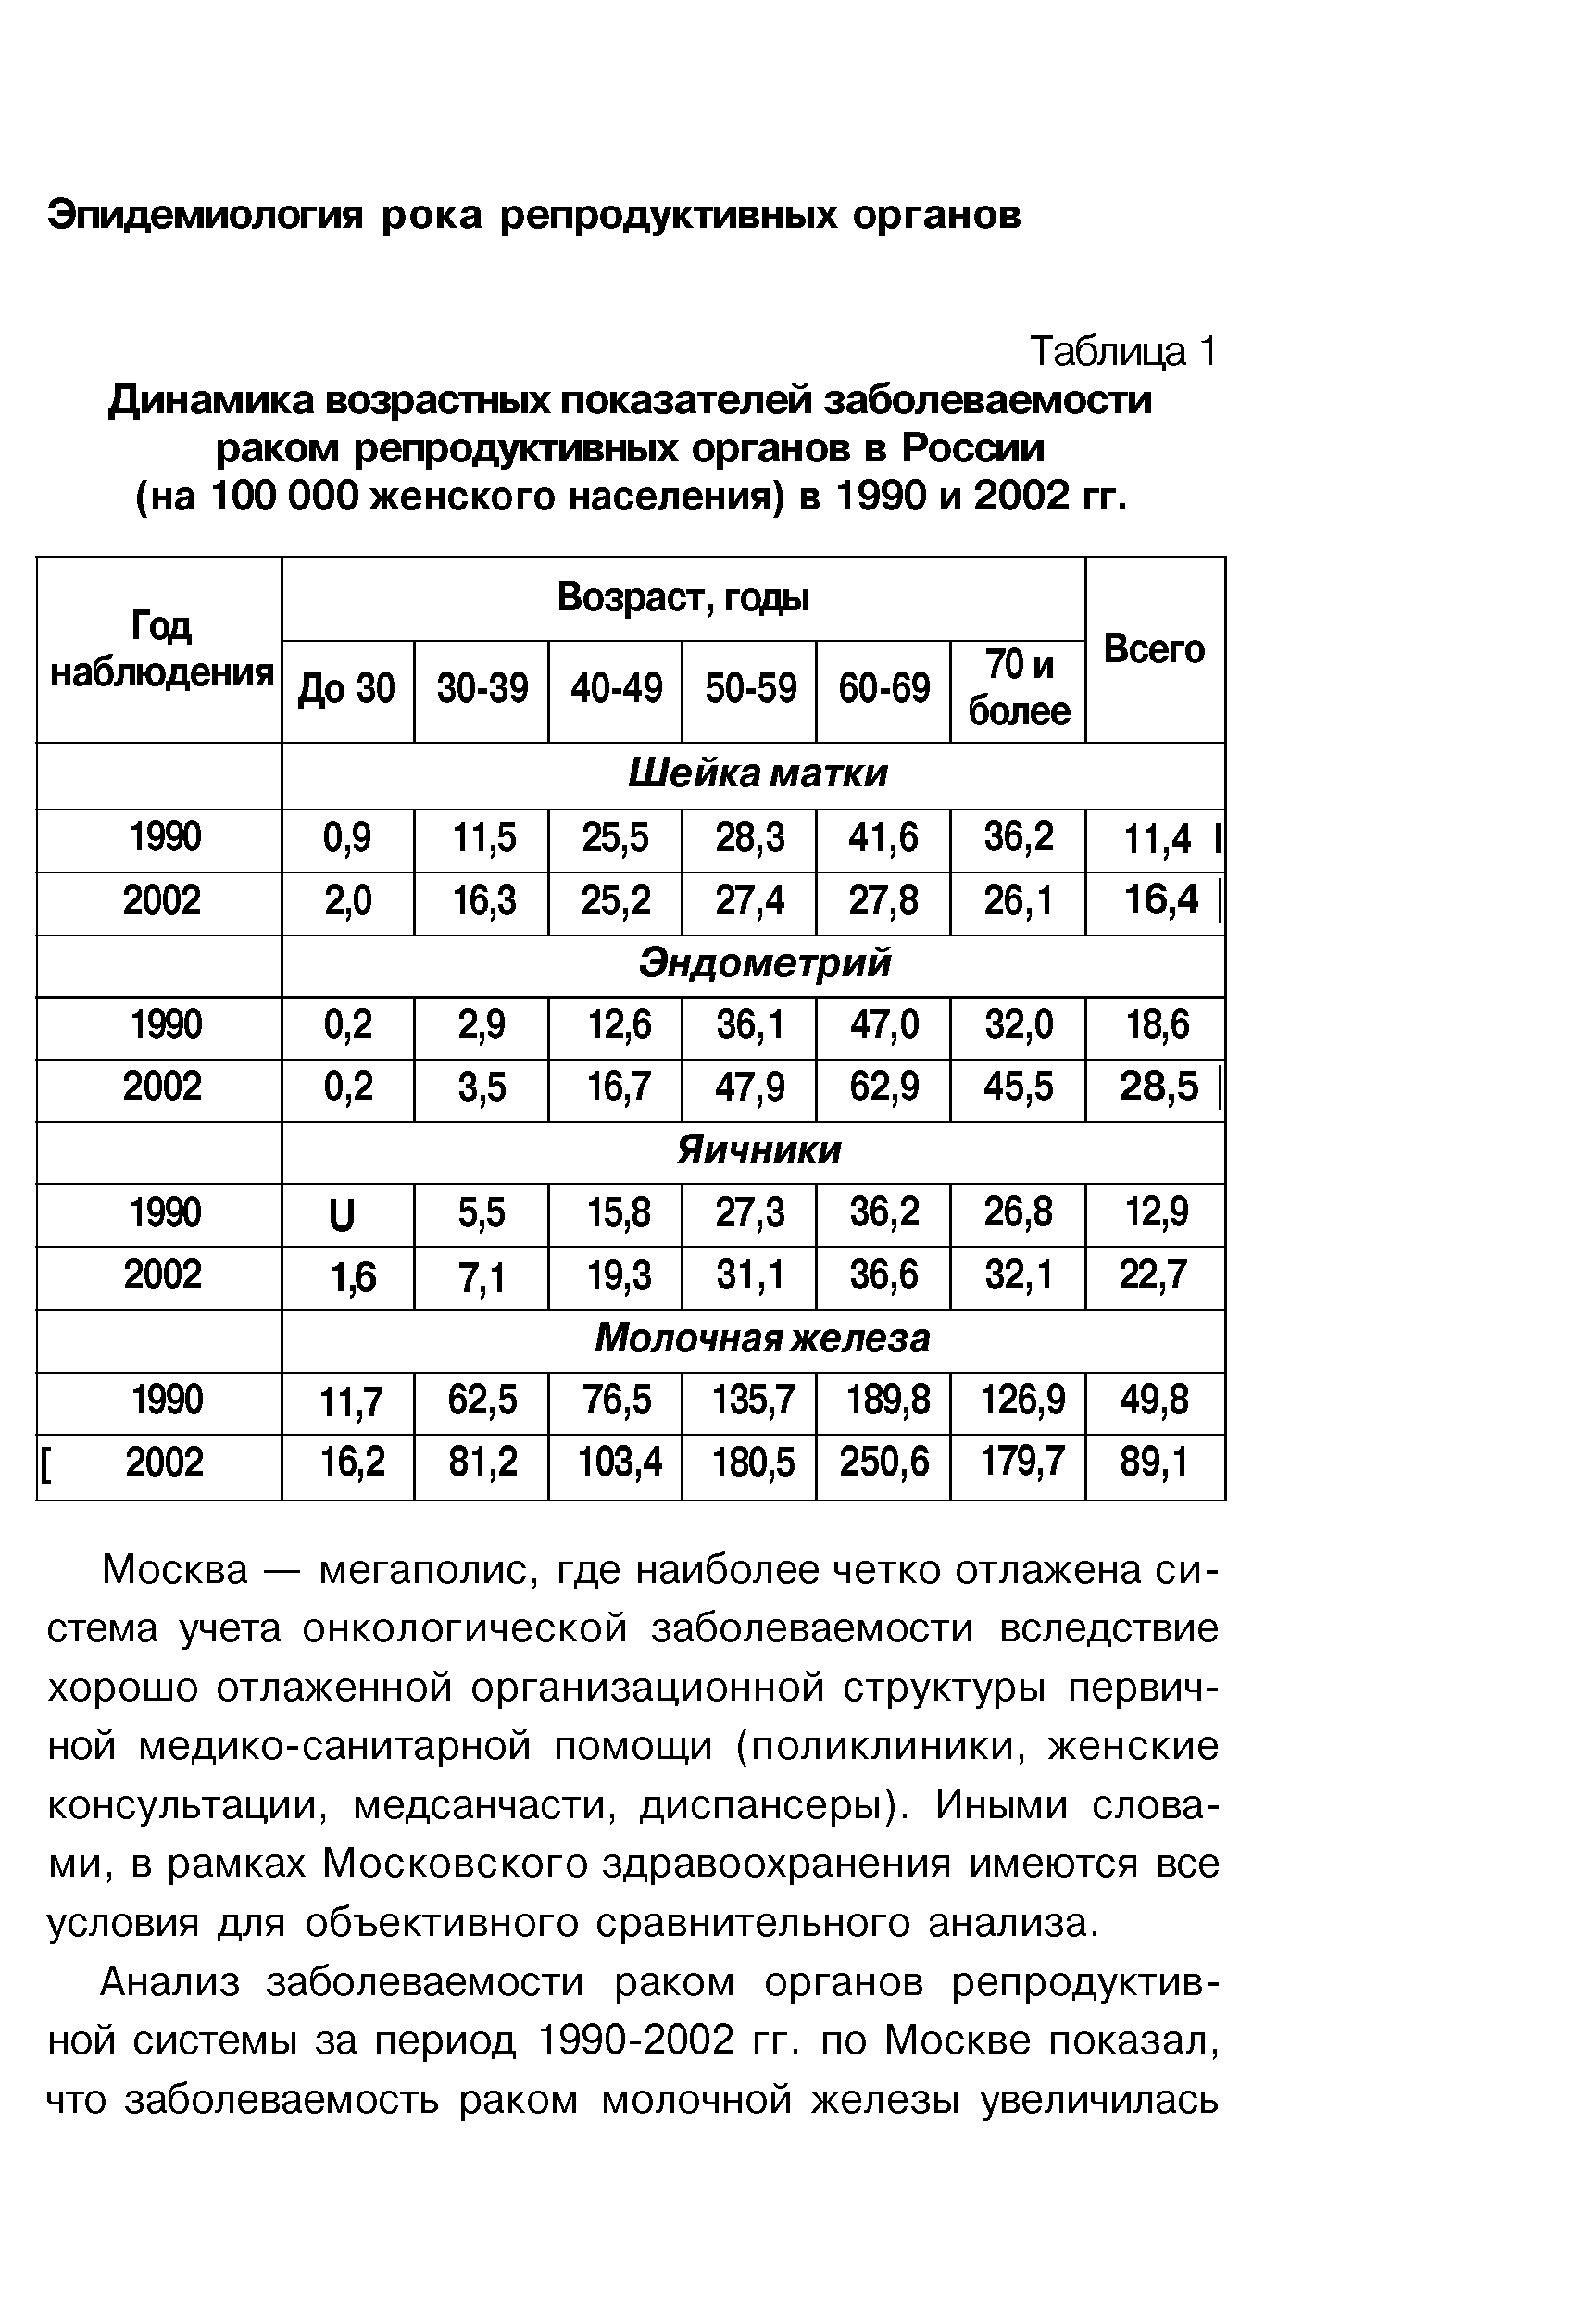 Таблица 1 Динамика возрастных показателей заболеваемости раком репродуктивных органов в России (на 100 000 женского населения) в 1990 и 2002 гг.